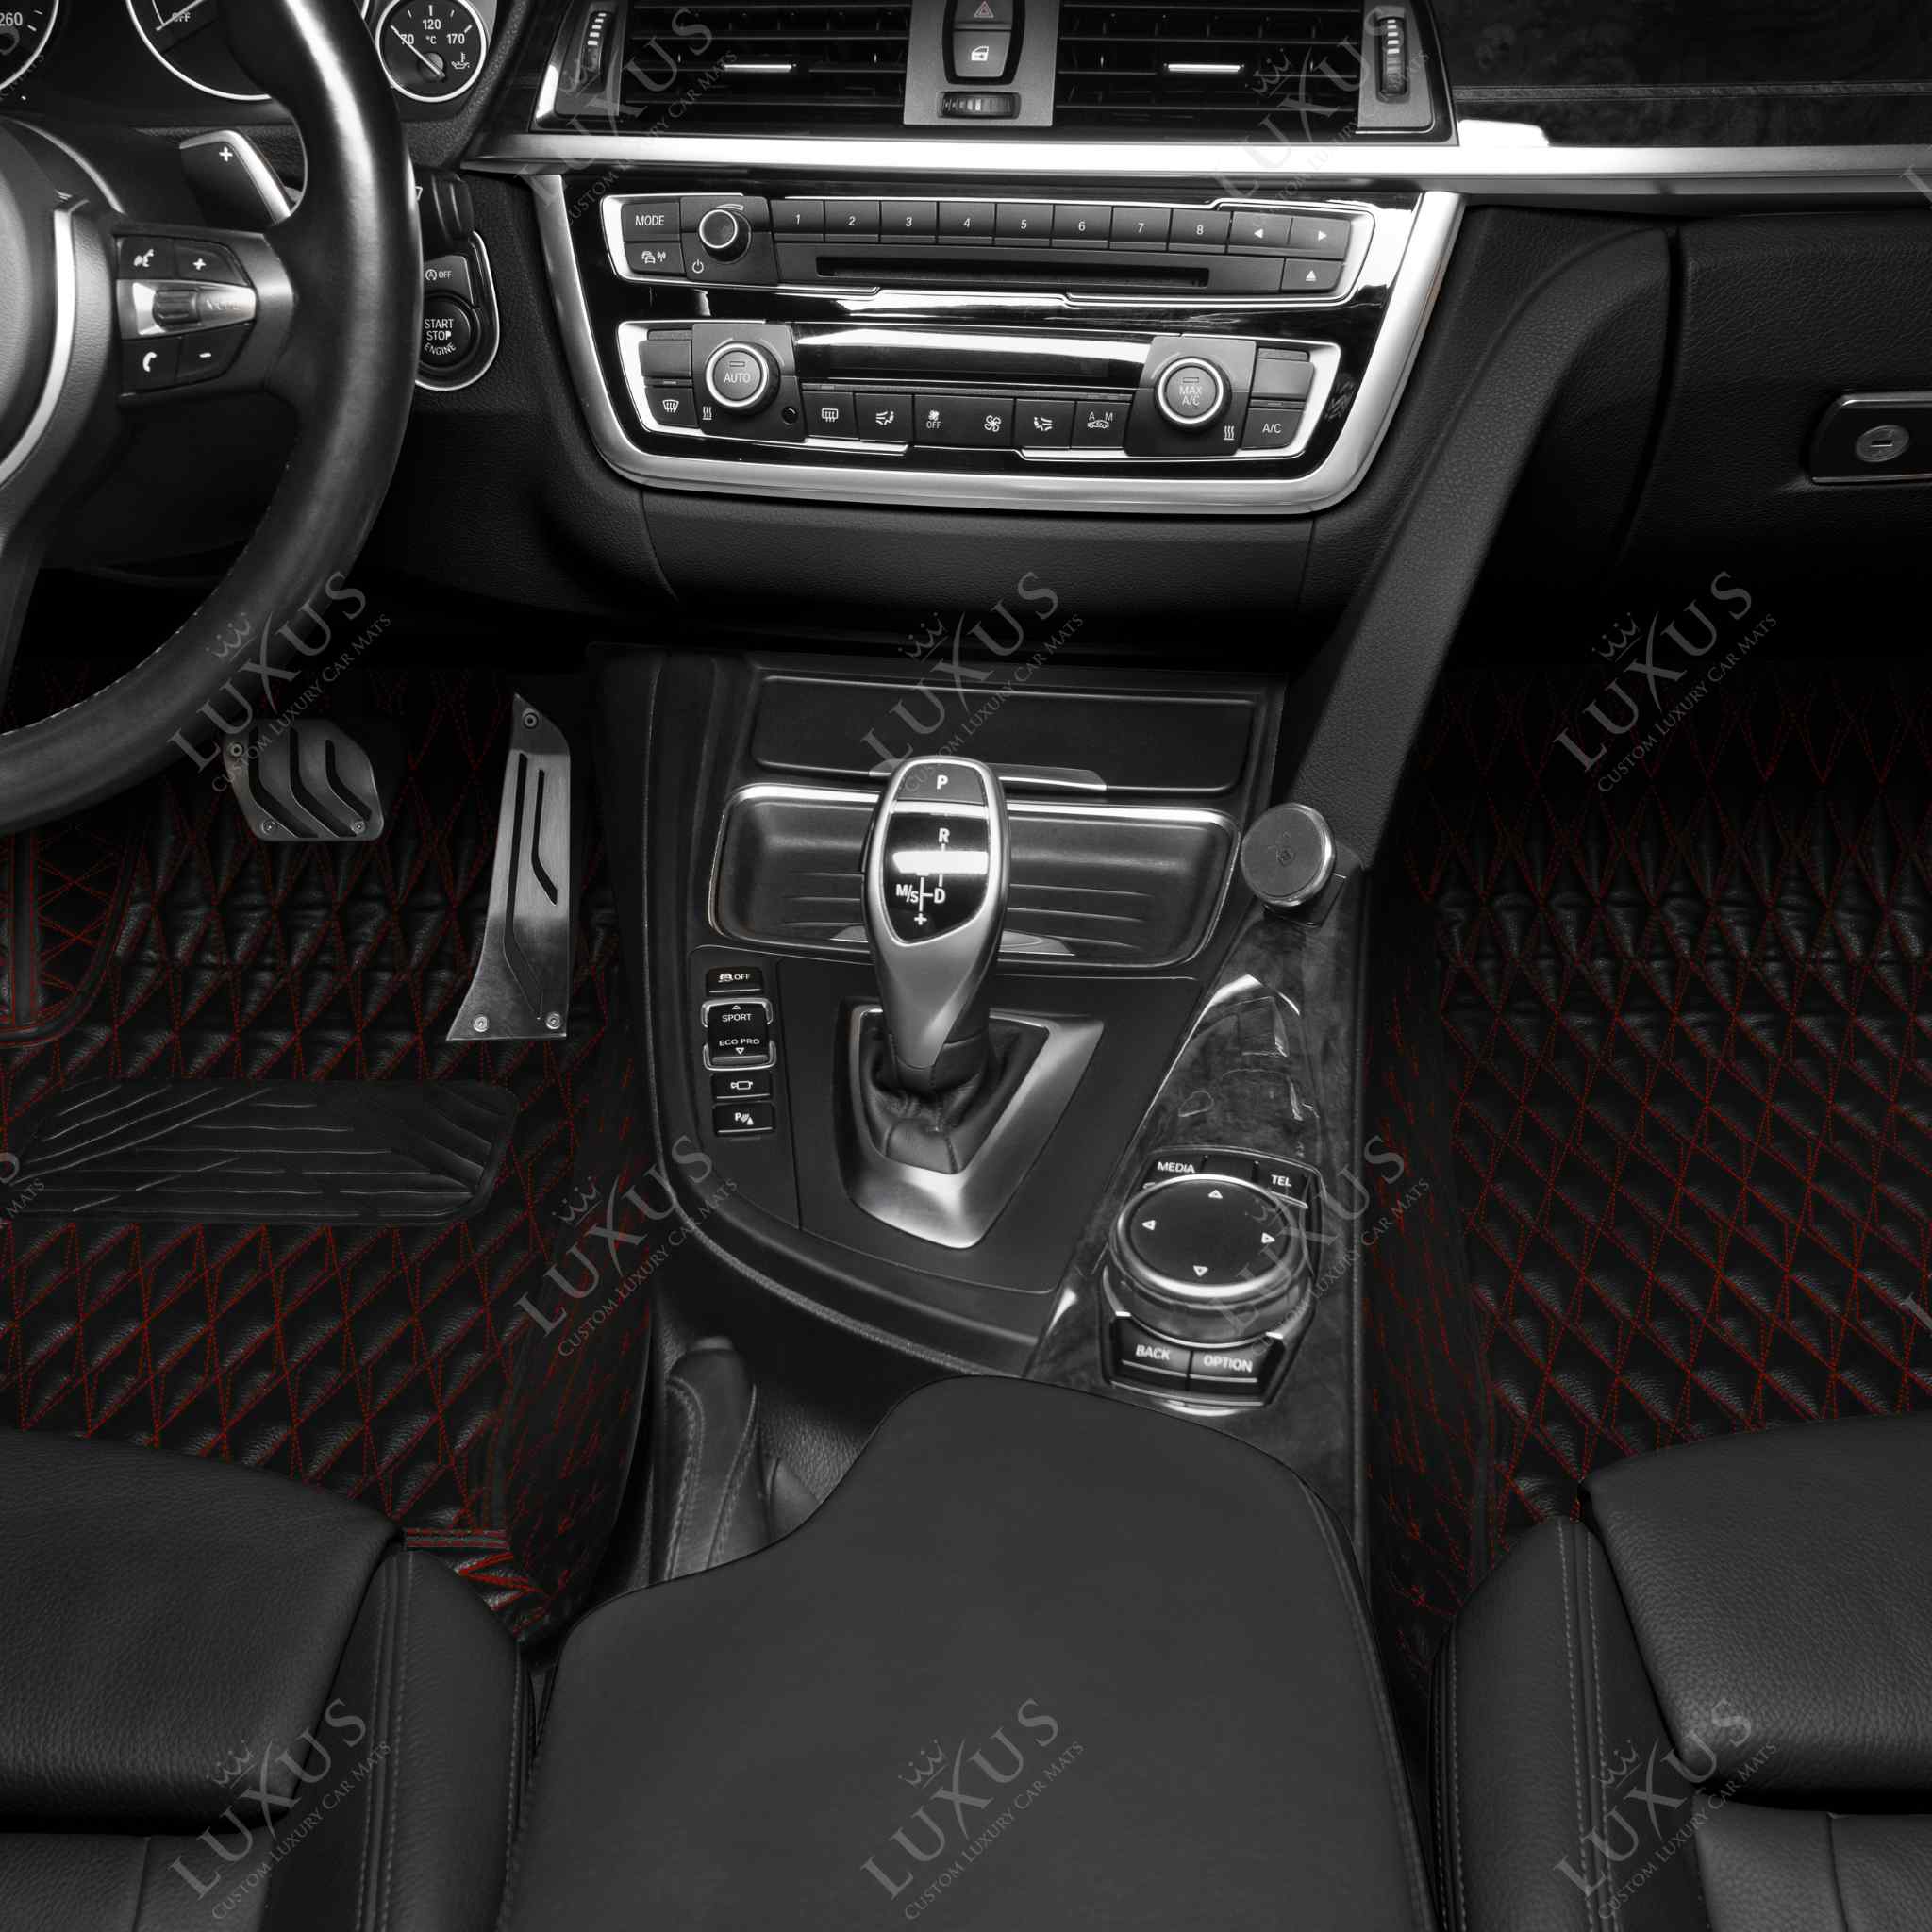 Twin-Diamond Black & Red Stitching Luxury Car Mats Set